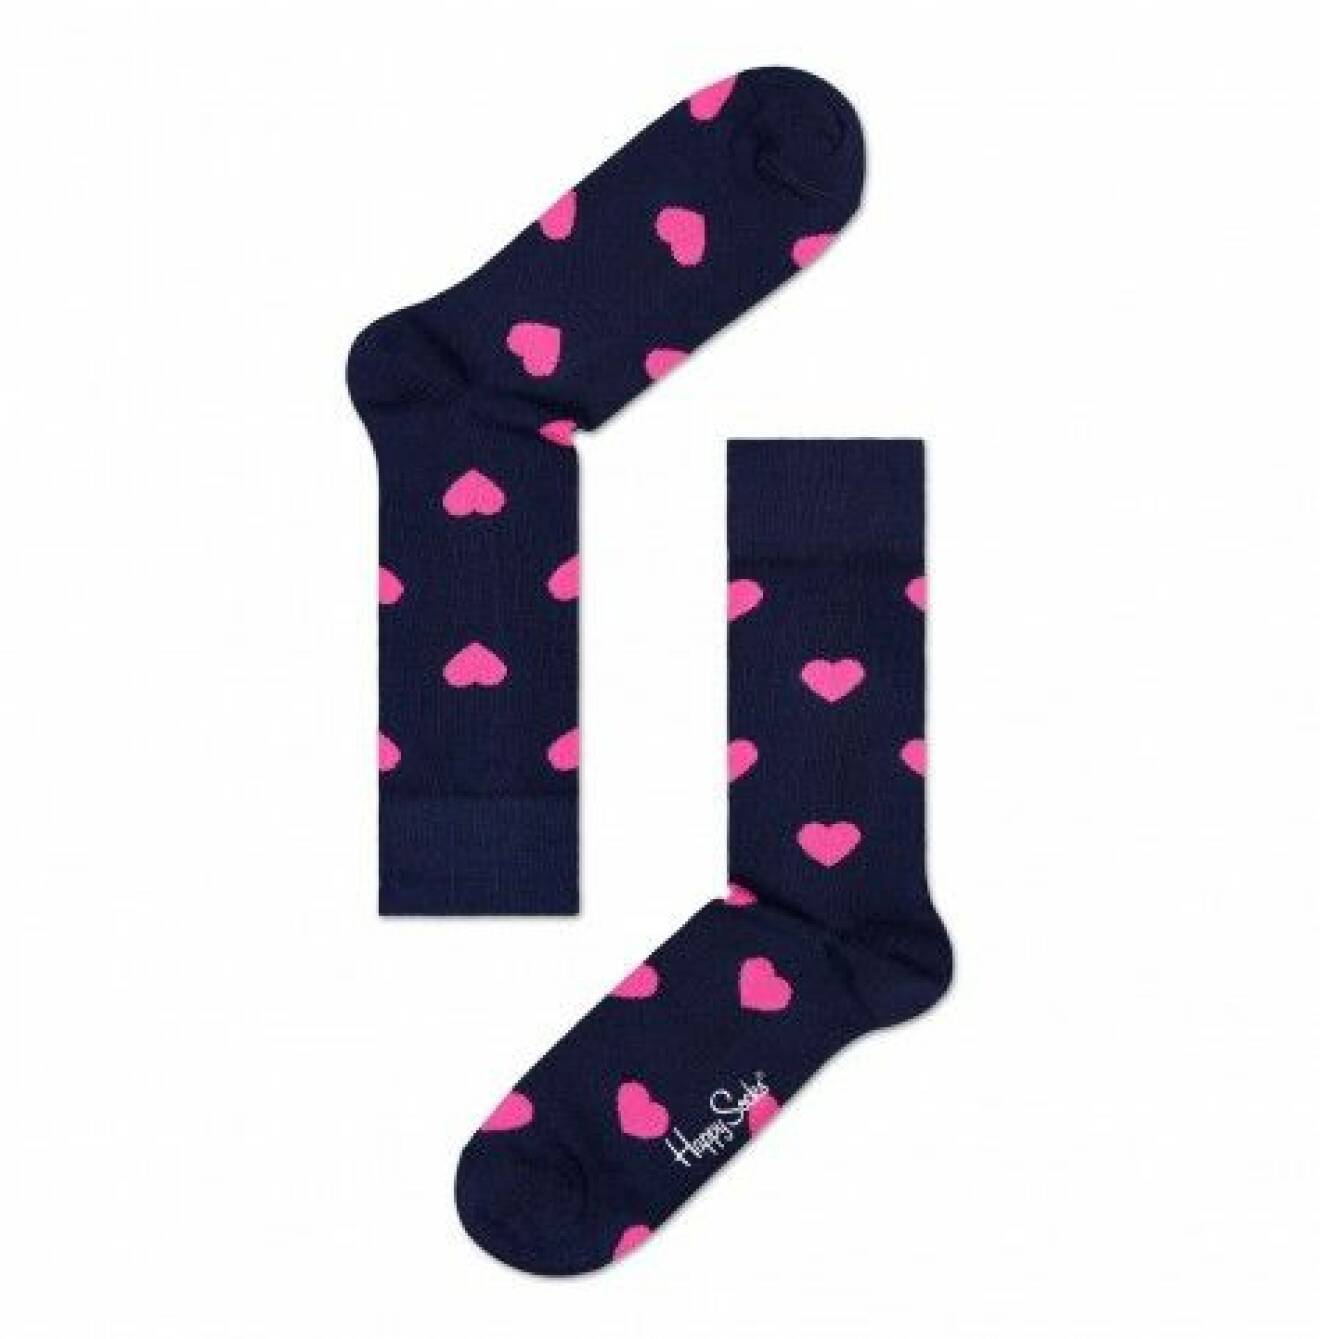 Roliga strumpor från Happy Socks, 80 kr, www.happysocks.com